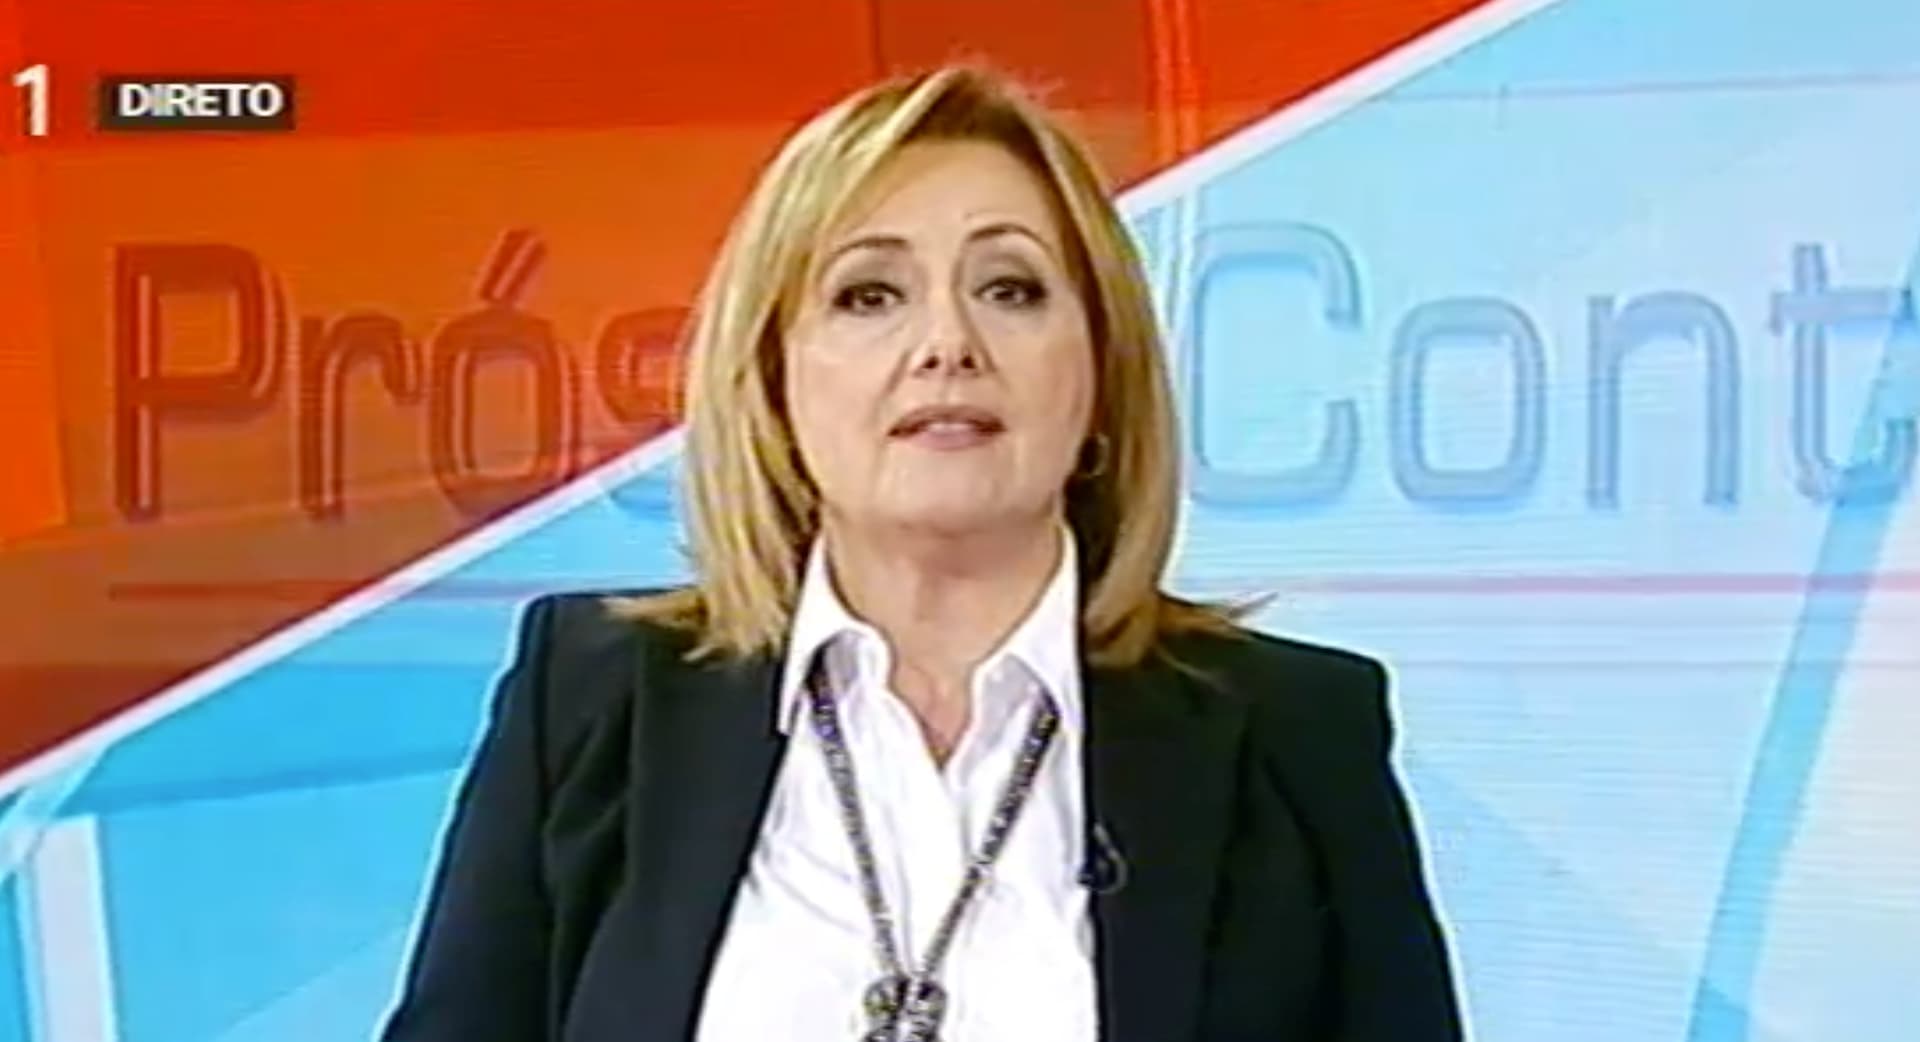 Fatima Campos Ferreira